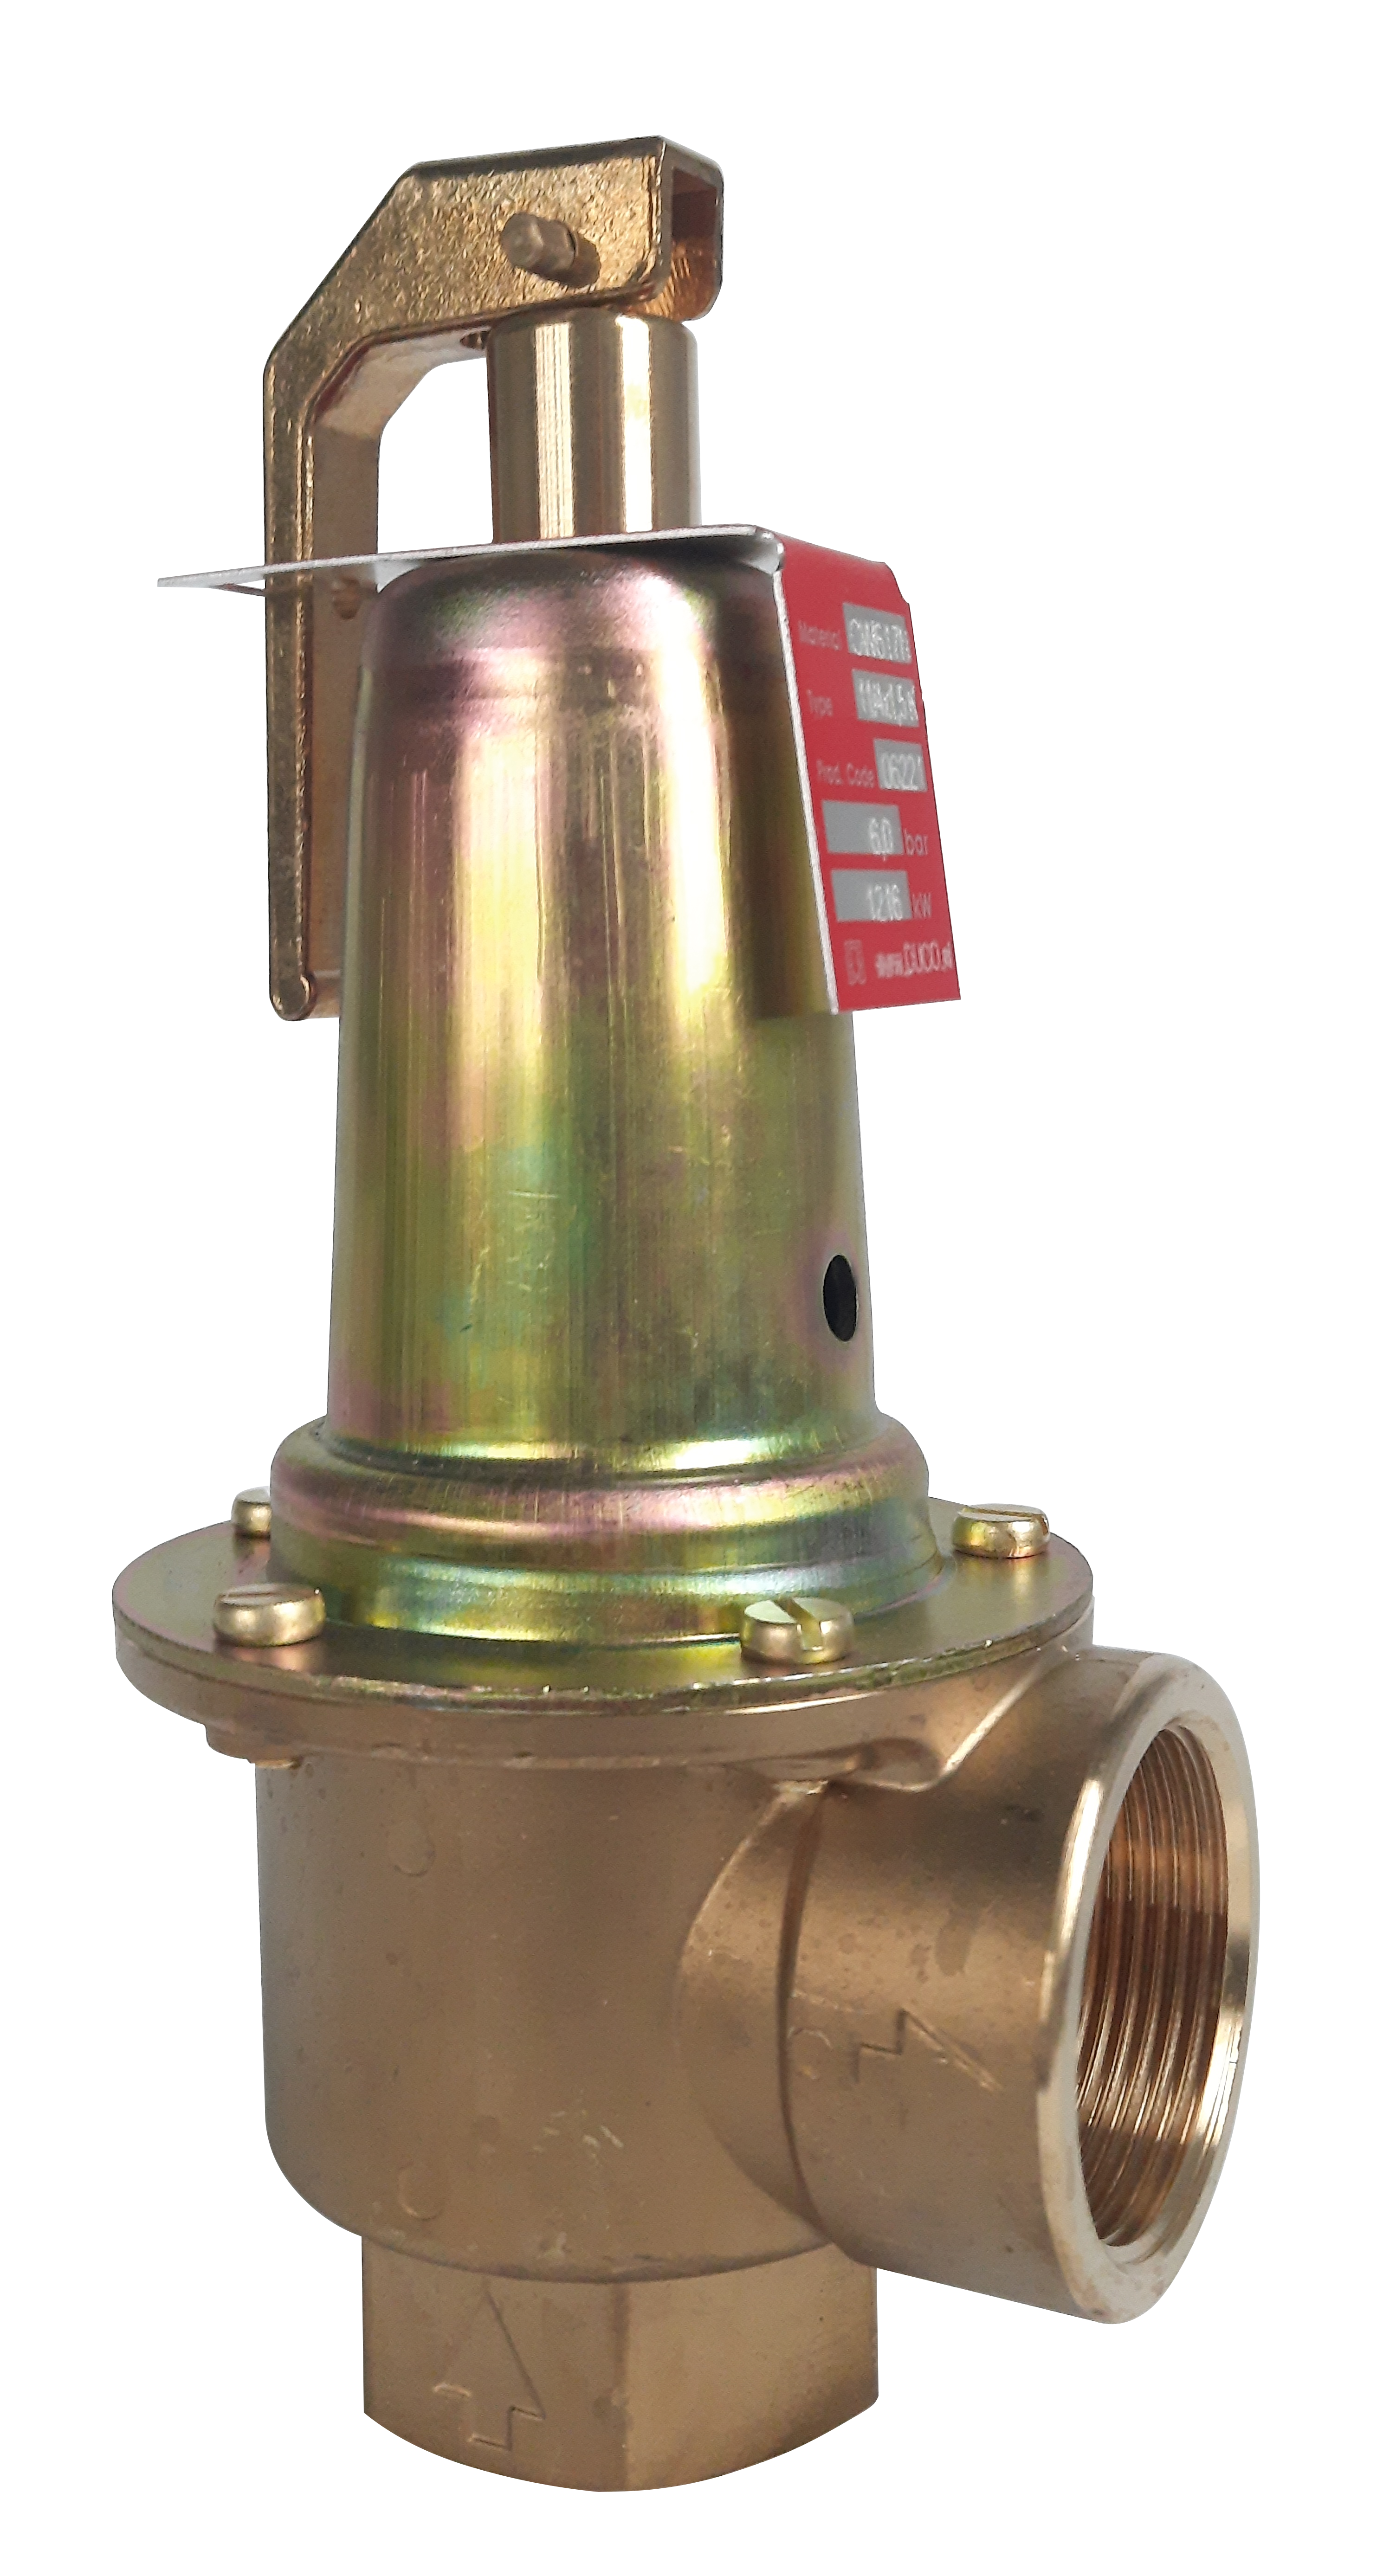 Topenářský pojistný ventil DUCO 2"x2 1/2" 0,5 bar (695065.05)